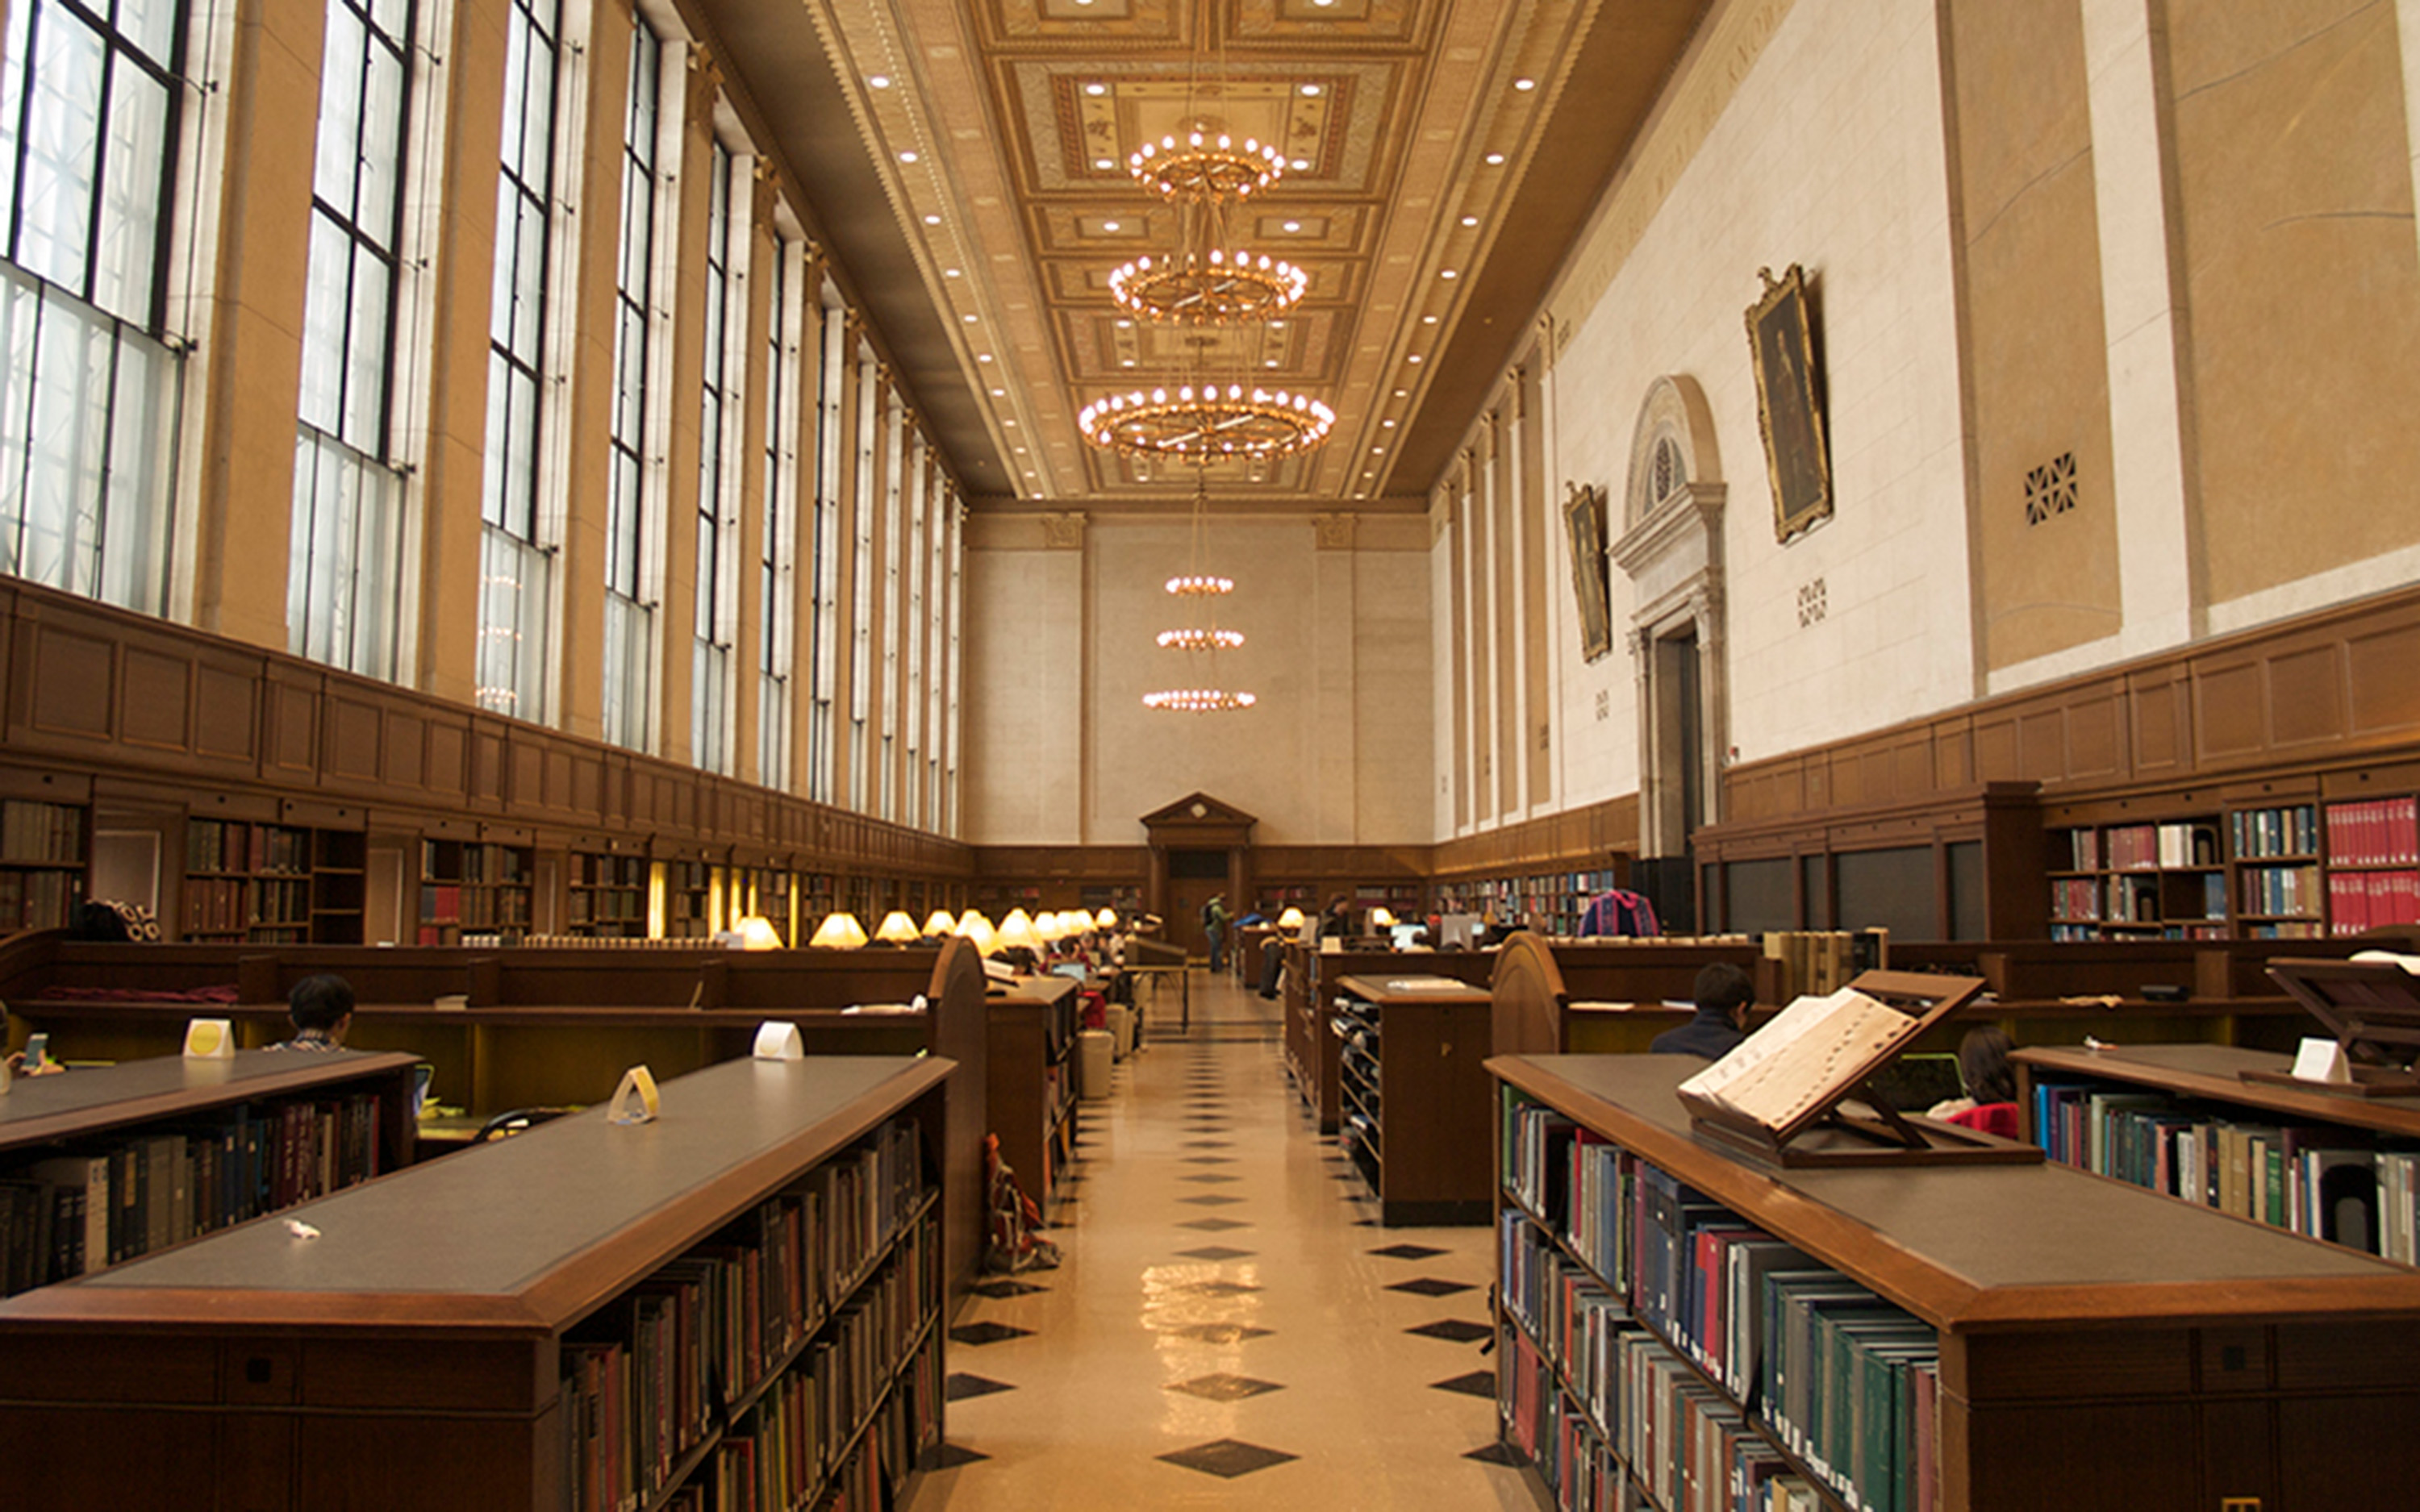 historic Butler library interior